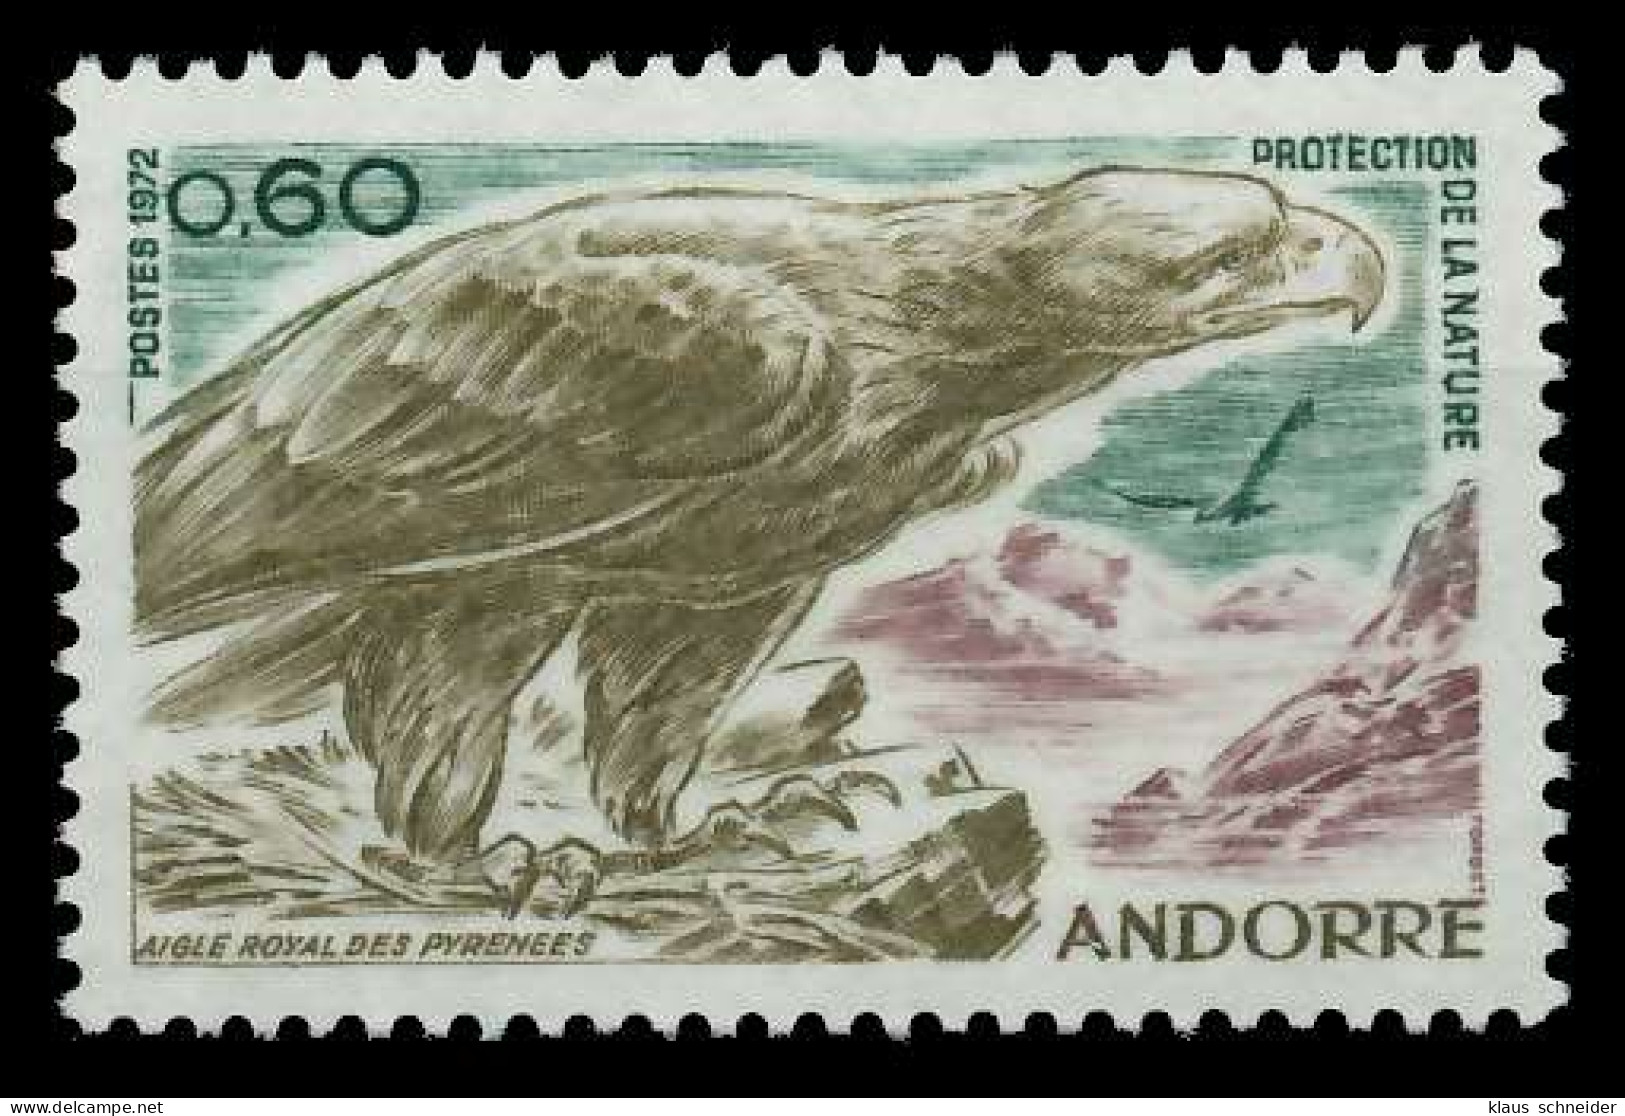 ANDORRA (FRANZ. POST) 1972 Nr 240 Postfrisch SB14856 - Ungebraucht